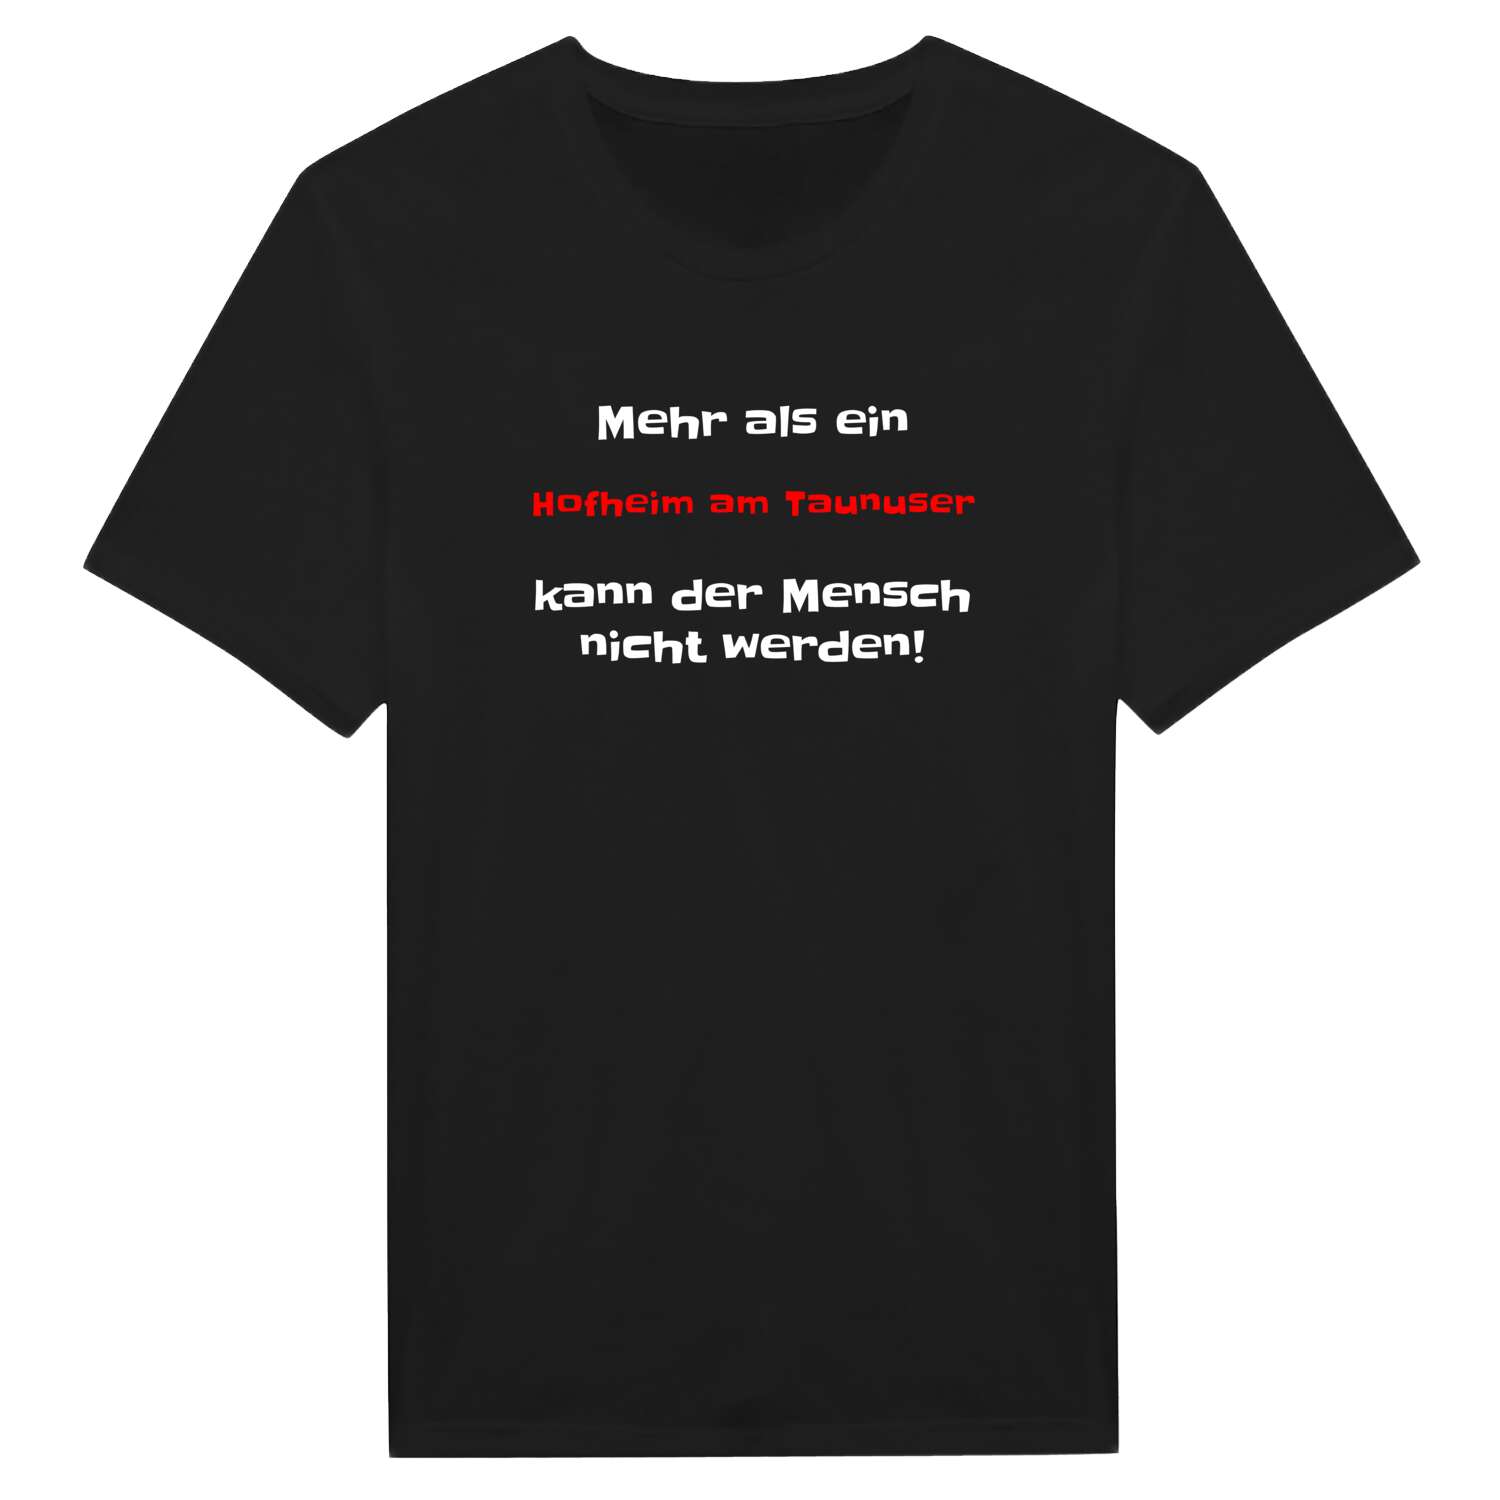 Hofheim am Taunus T-Shirt »Mehr als ein«